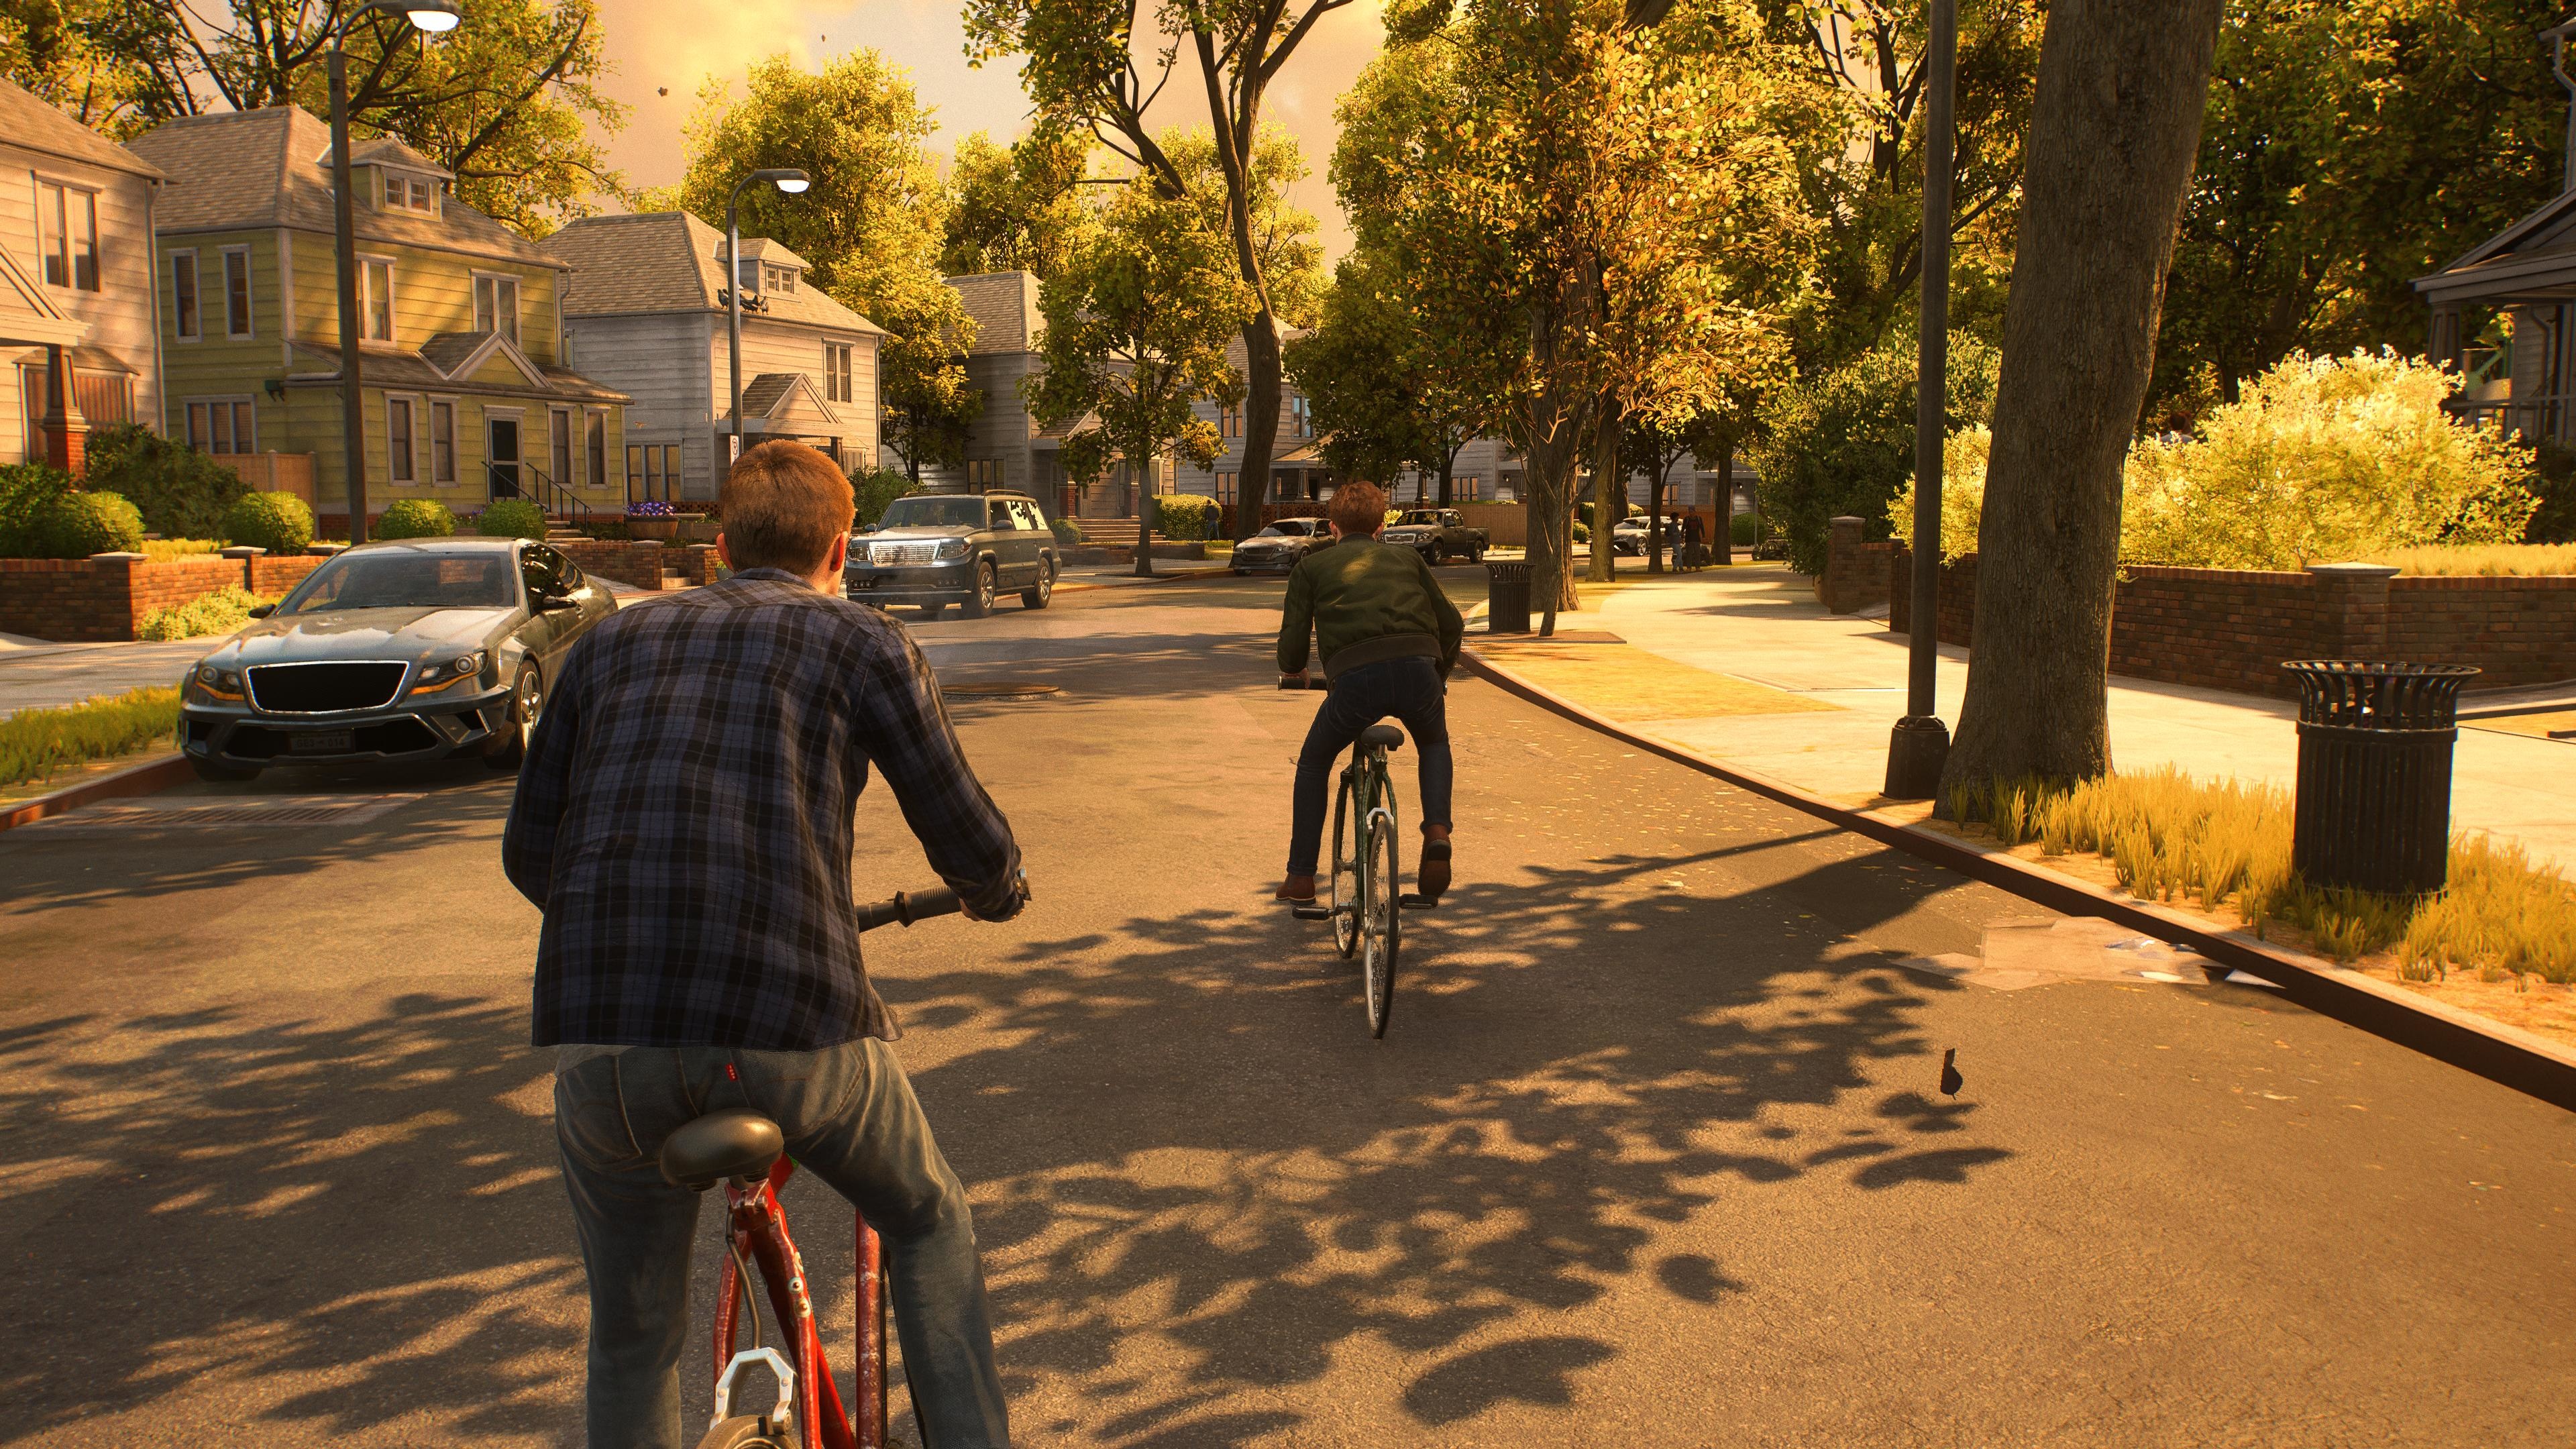 (Peter y Harry rememoran mientras pasean en bicicleta por Queens. Spider Man 2 sabe hacer algo más que acción)